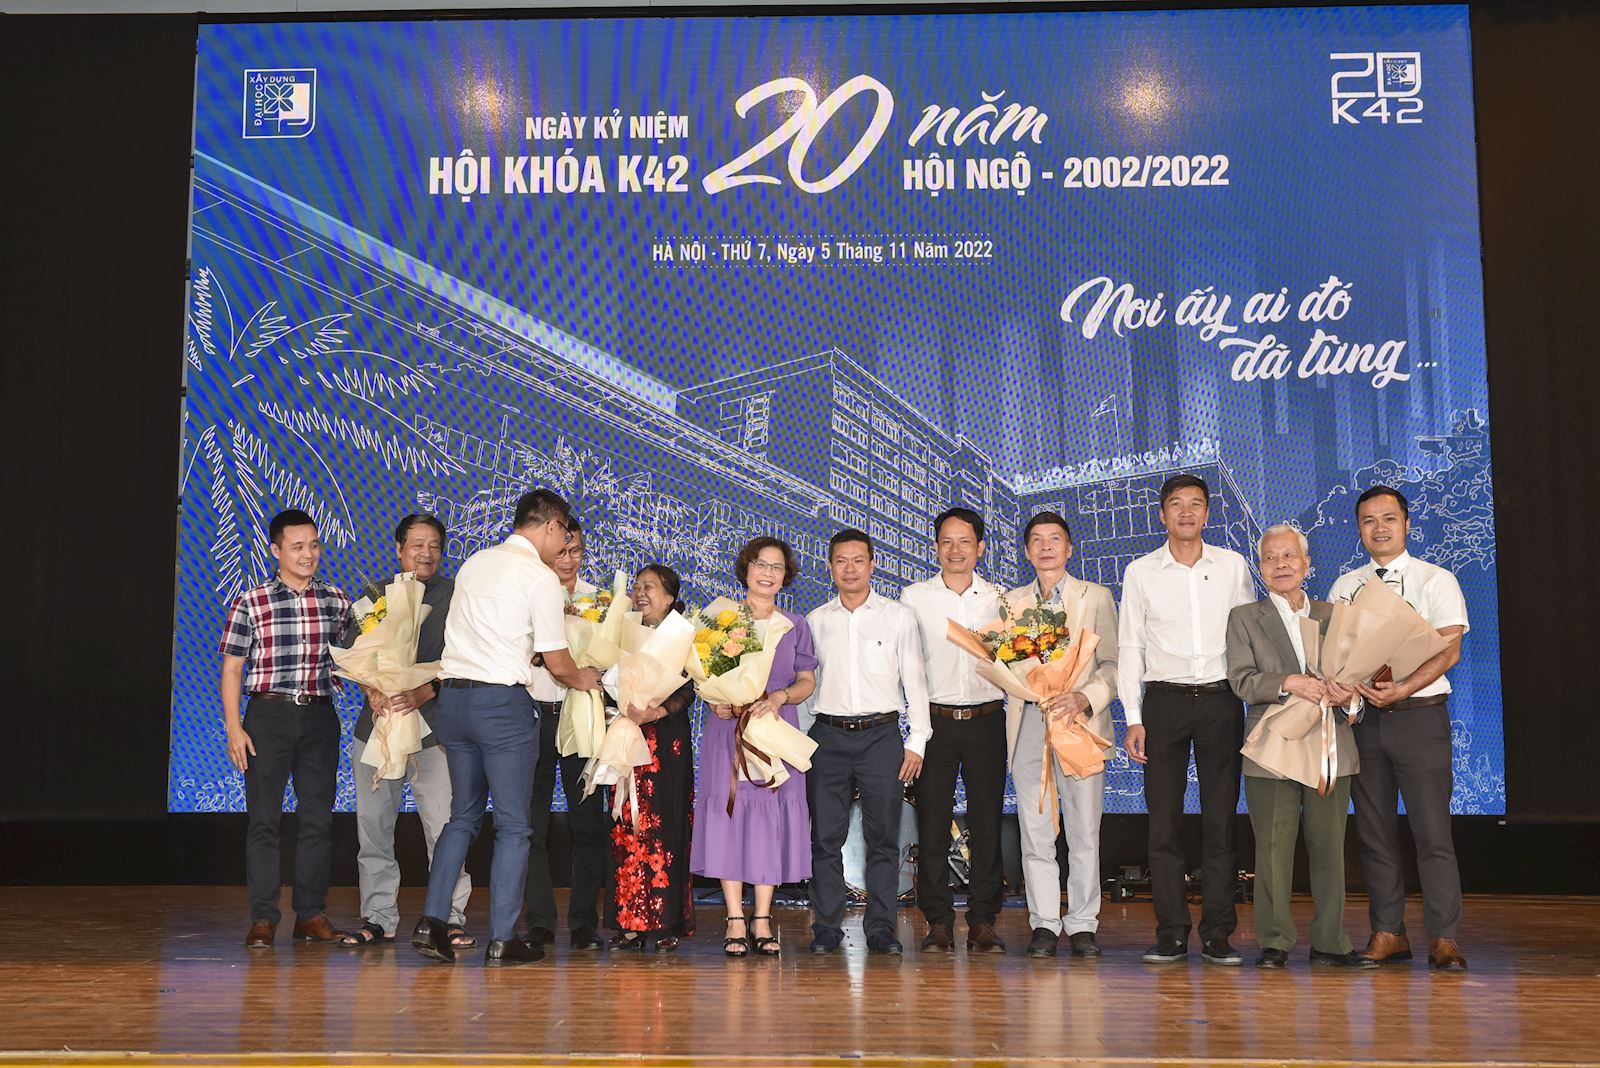 Hội khóa kỷ niệm 20 năm ra trường của Cựu sinh viên K42 Trường ĐHXD Hà Nội